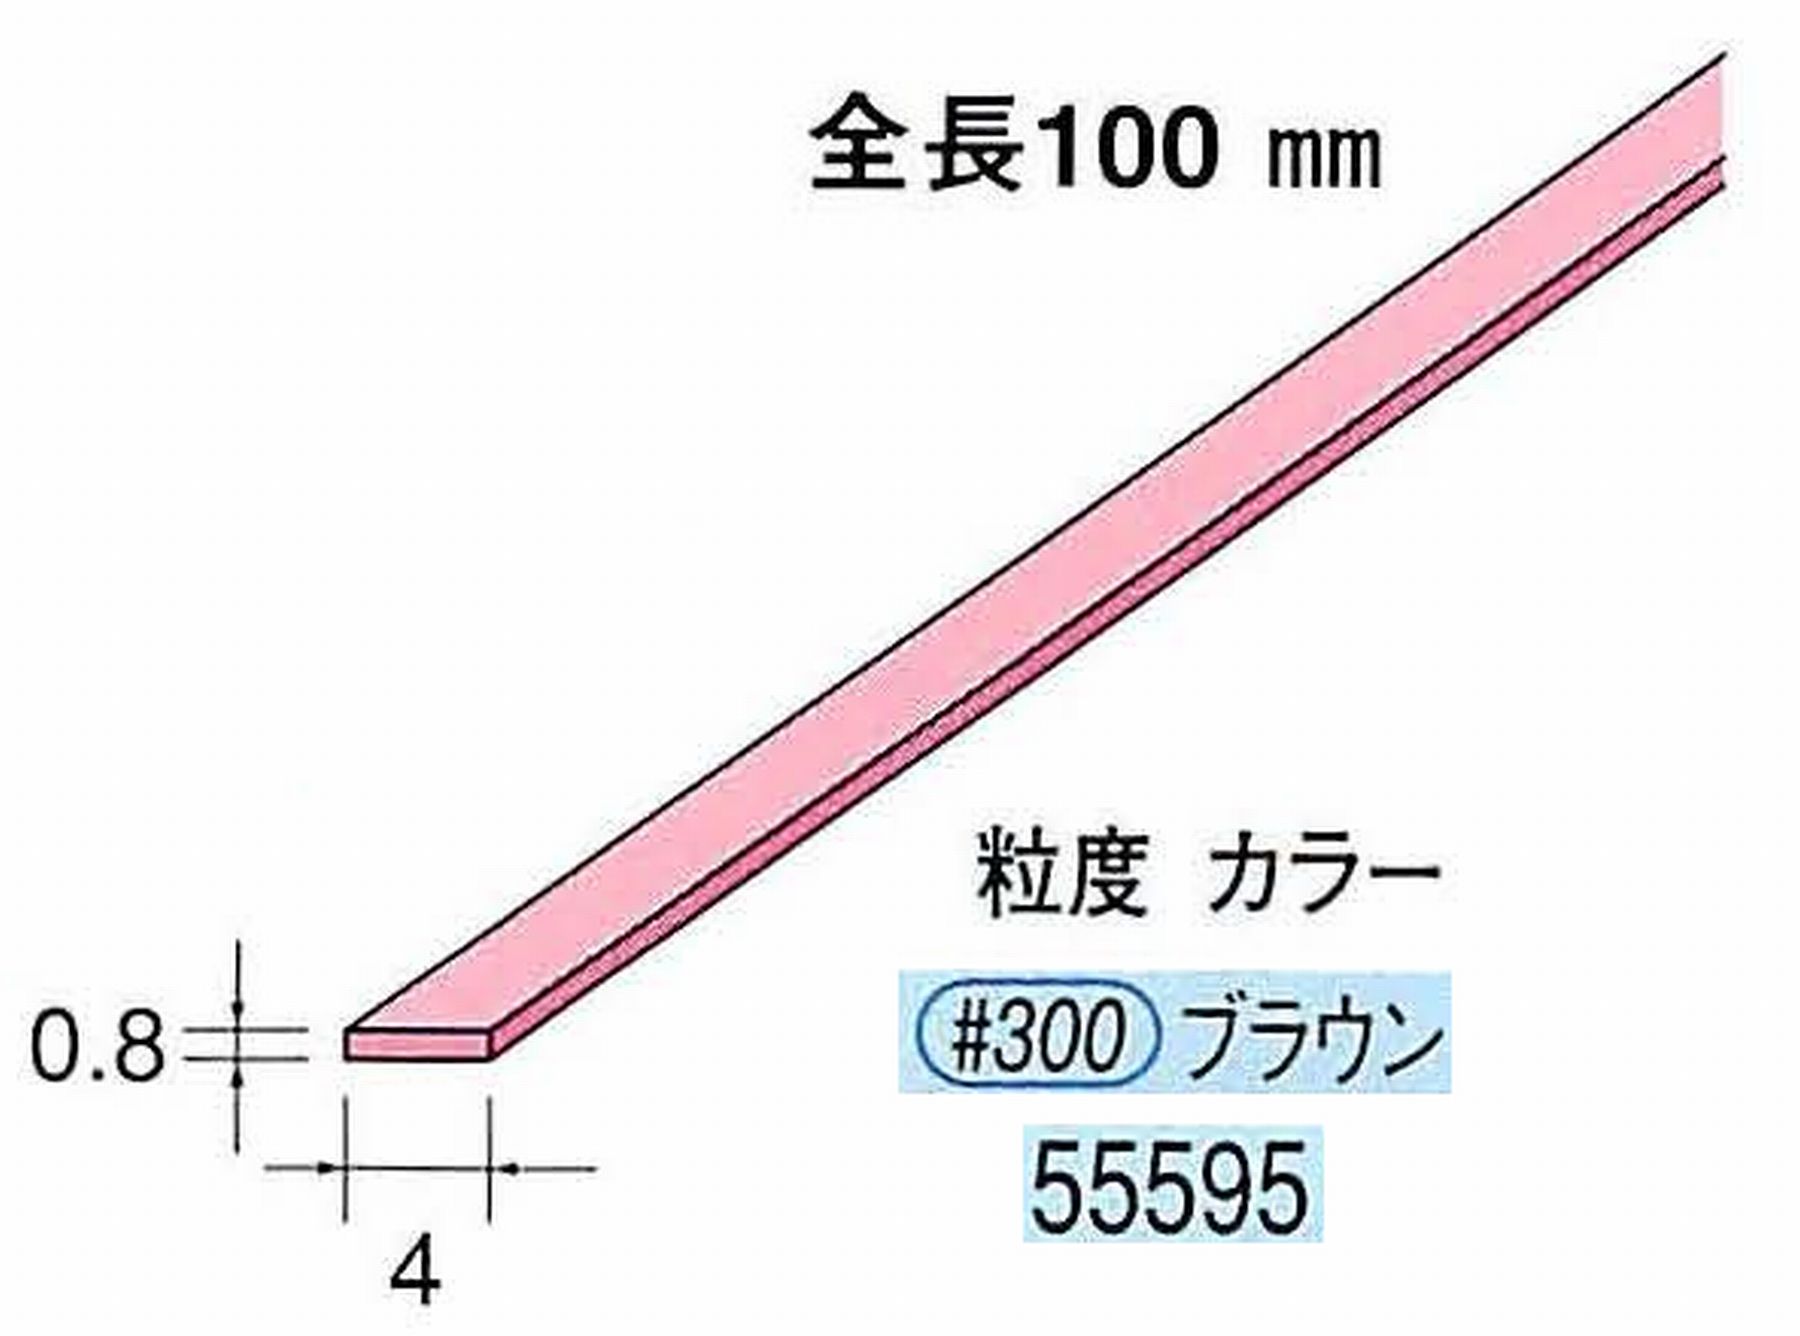 ナカニシ/NAKANISHI セラファイバー砥石 全長100mm ブラウン 55595